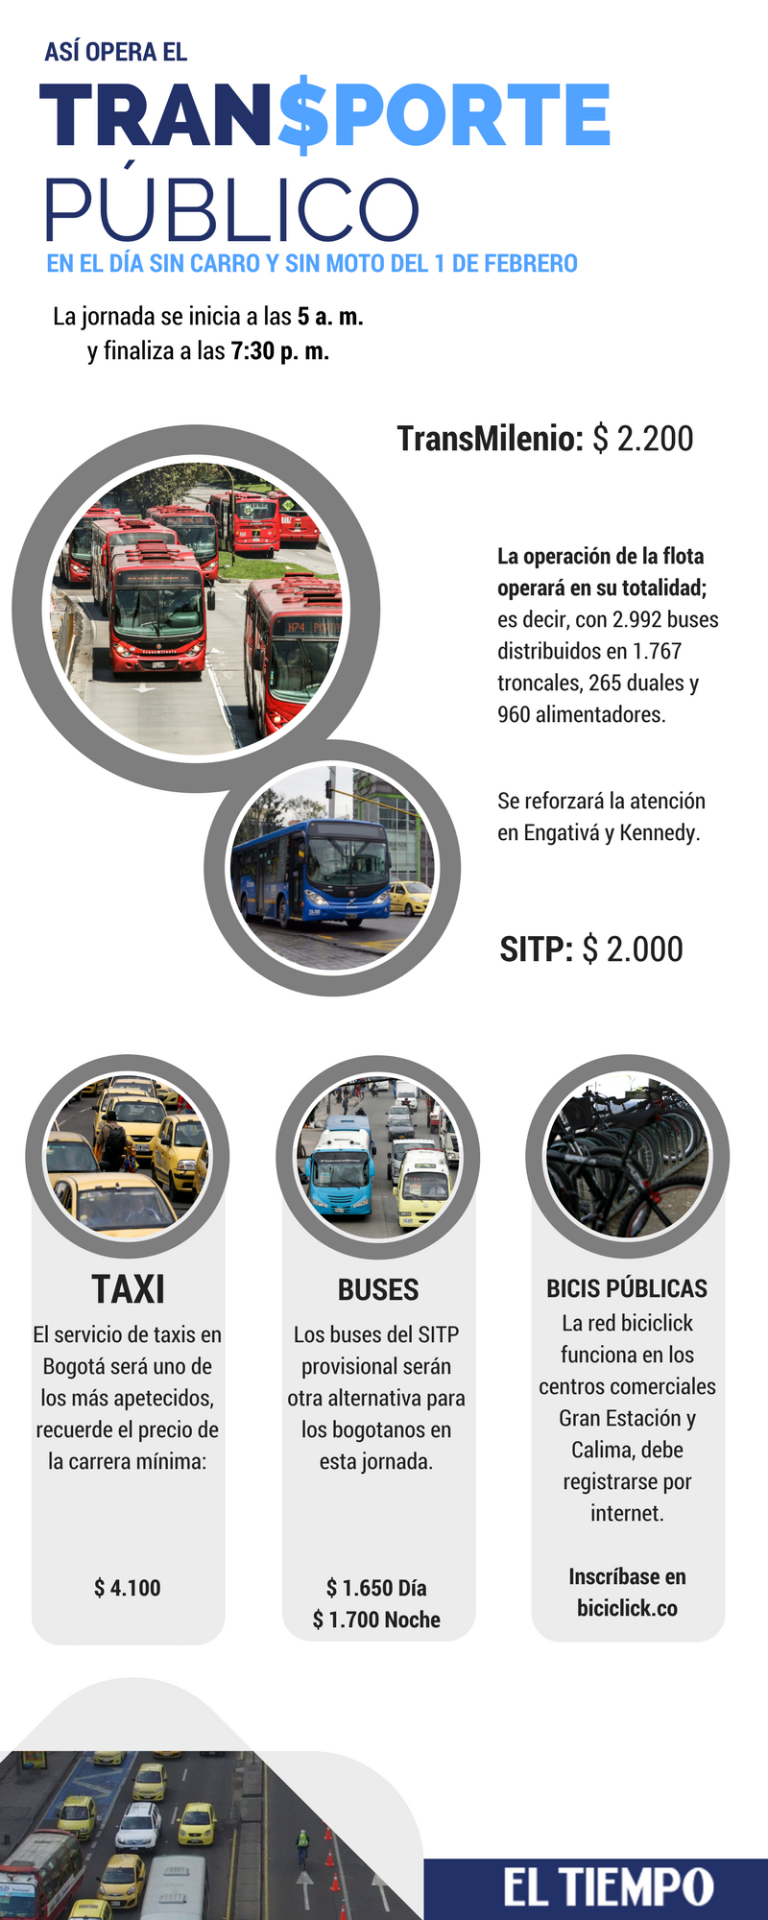 Así funcionará el transporte público este 1 de febrero en Bogotá durante el Día sin carro.